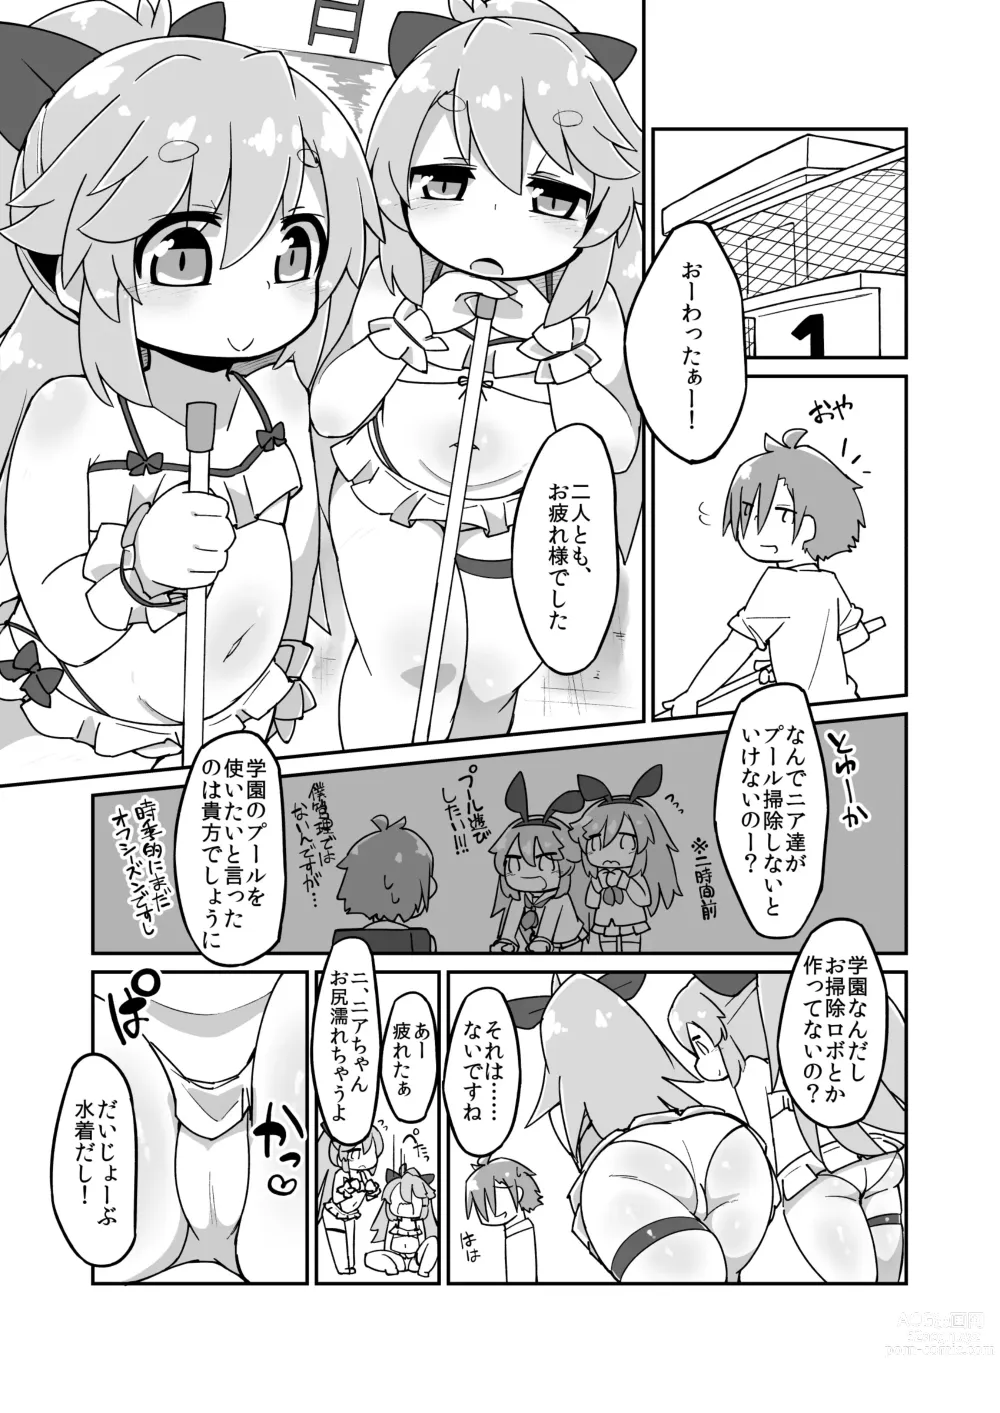 Page 1 of doujinshi Near Noah Ecchi Manga